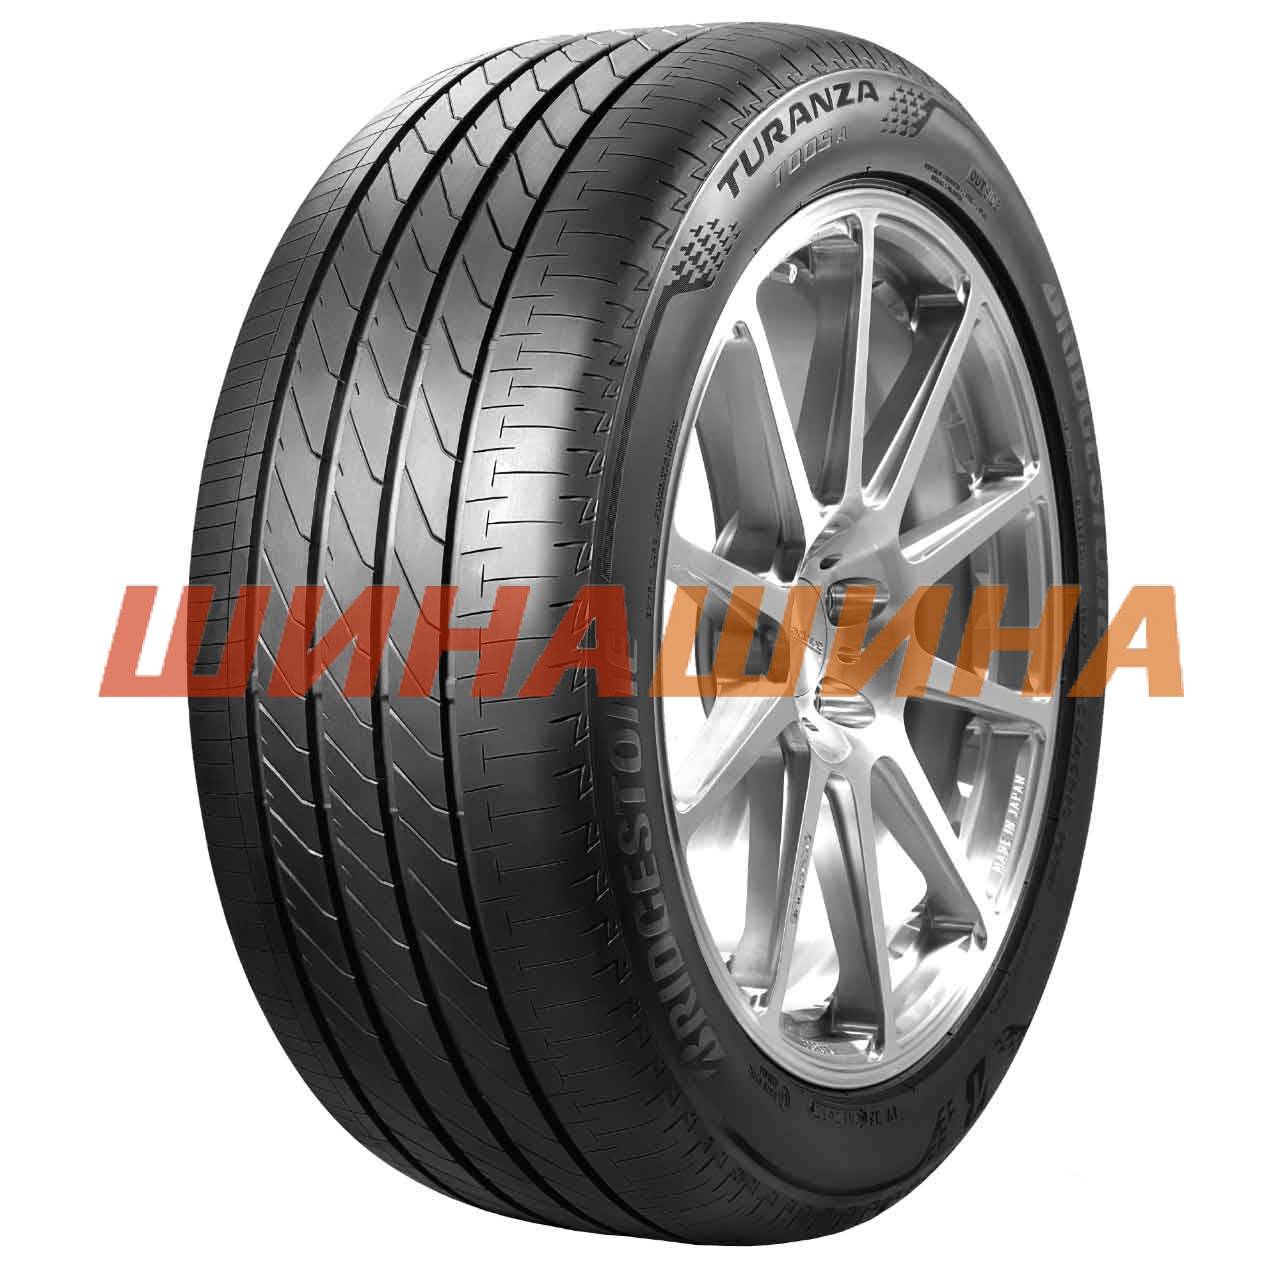 Bridgestone Turanza T005A 215/50 R18 92W AO